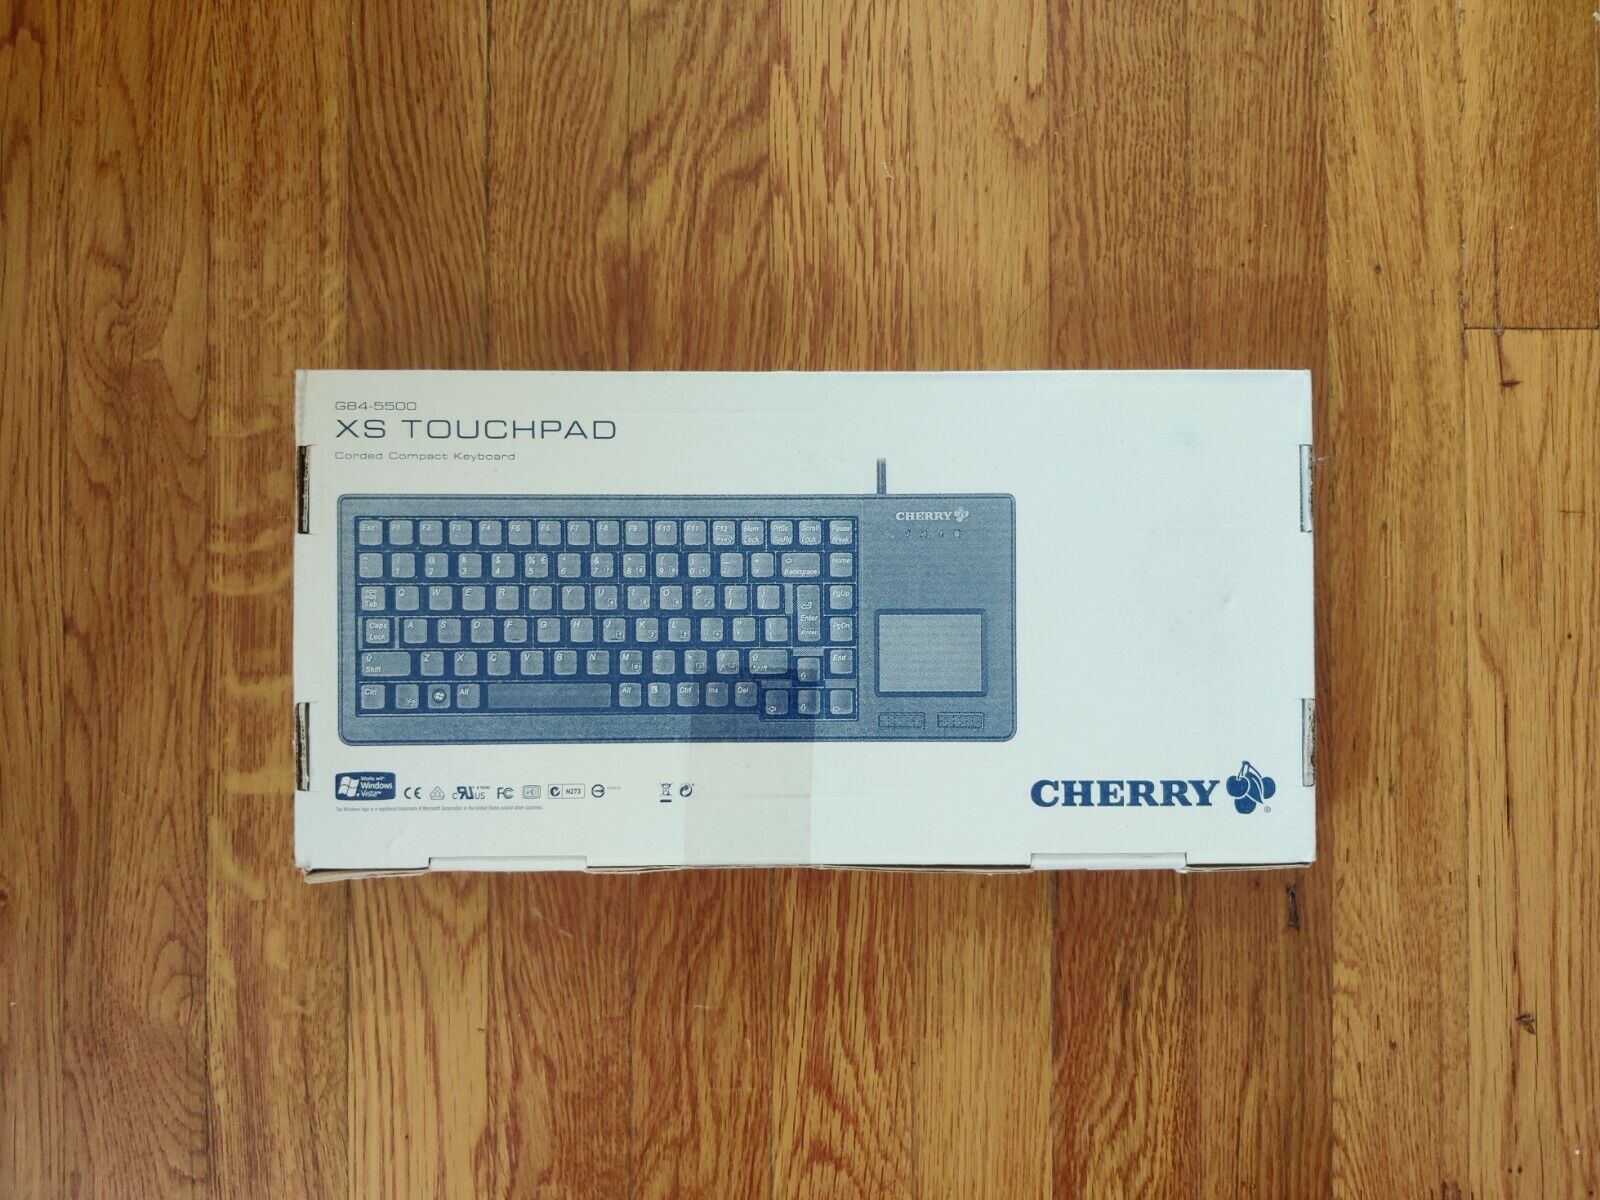 Cherry G84-5500 Xs Touchpad Keyboard - 88 Keys - Black - English (US)